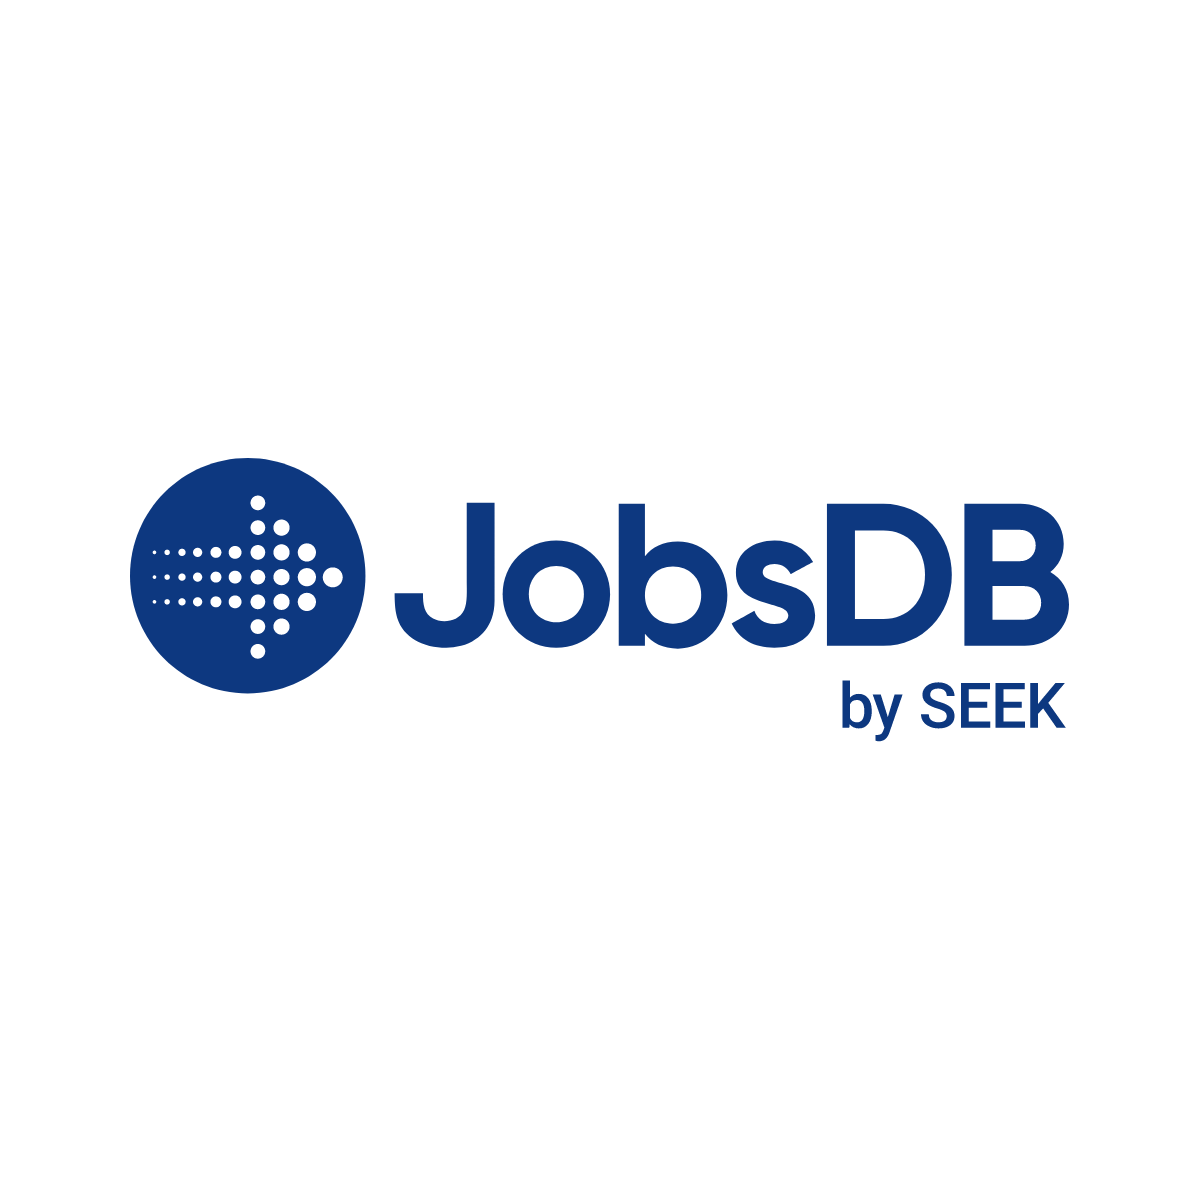 Jobsdb – Hong Kong'S No. 1 Jobs, Employment, Career And Recruitment Site